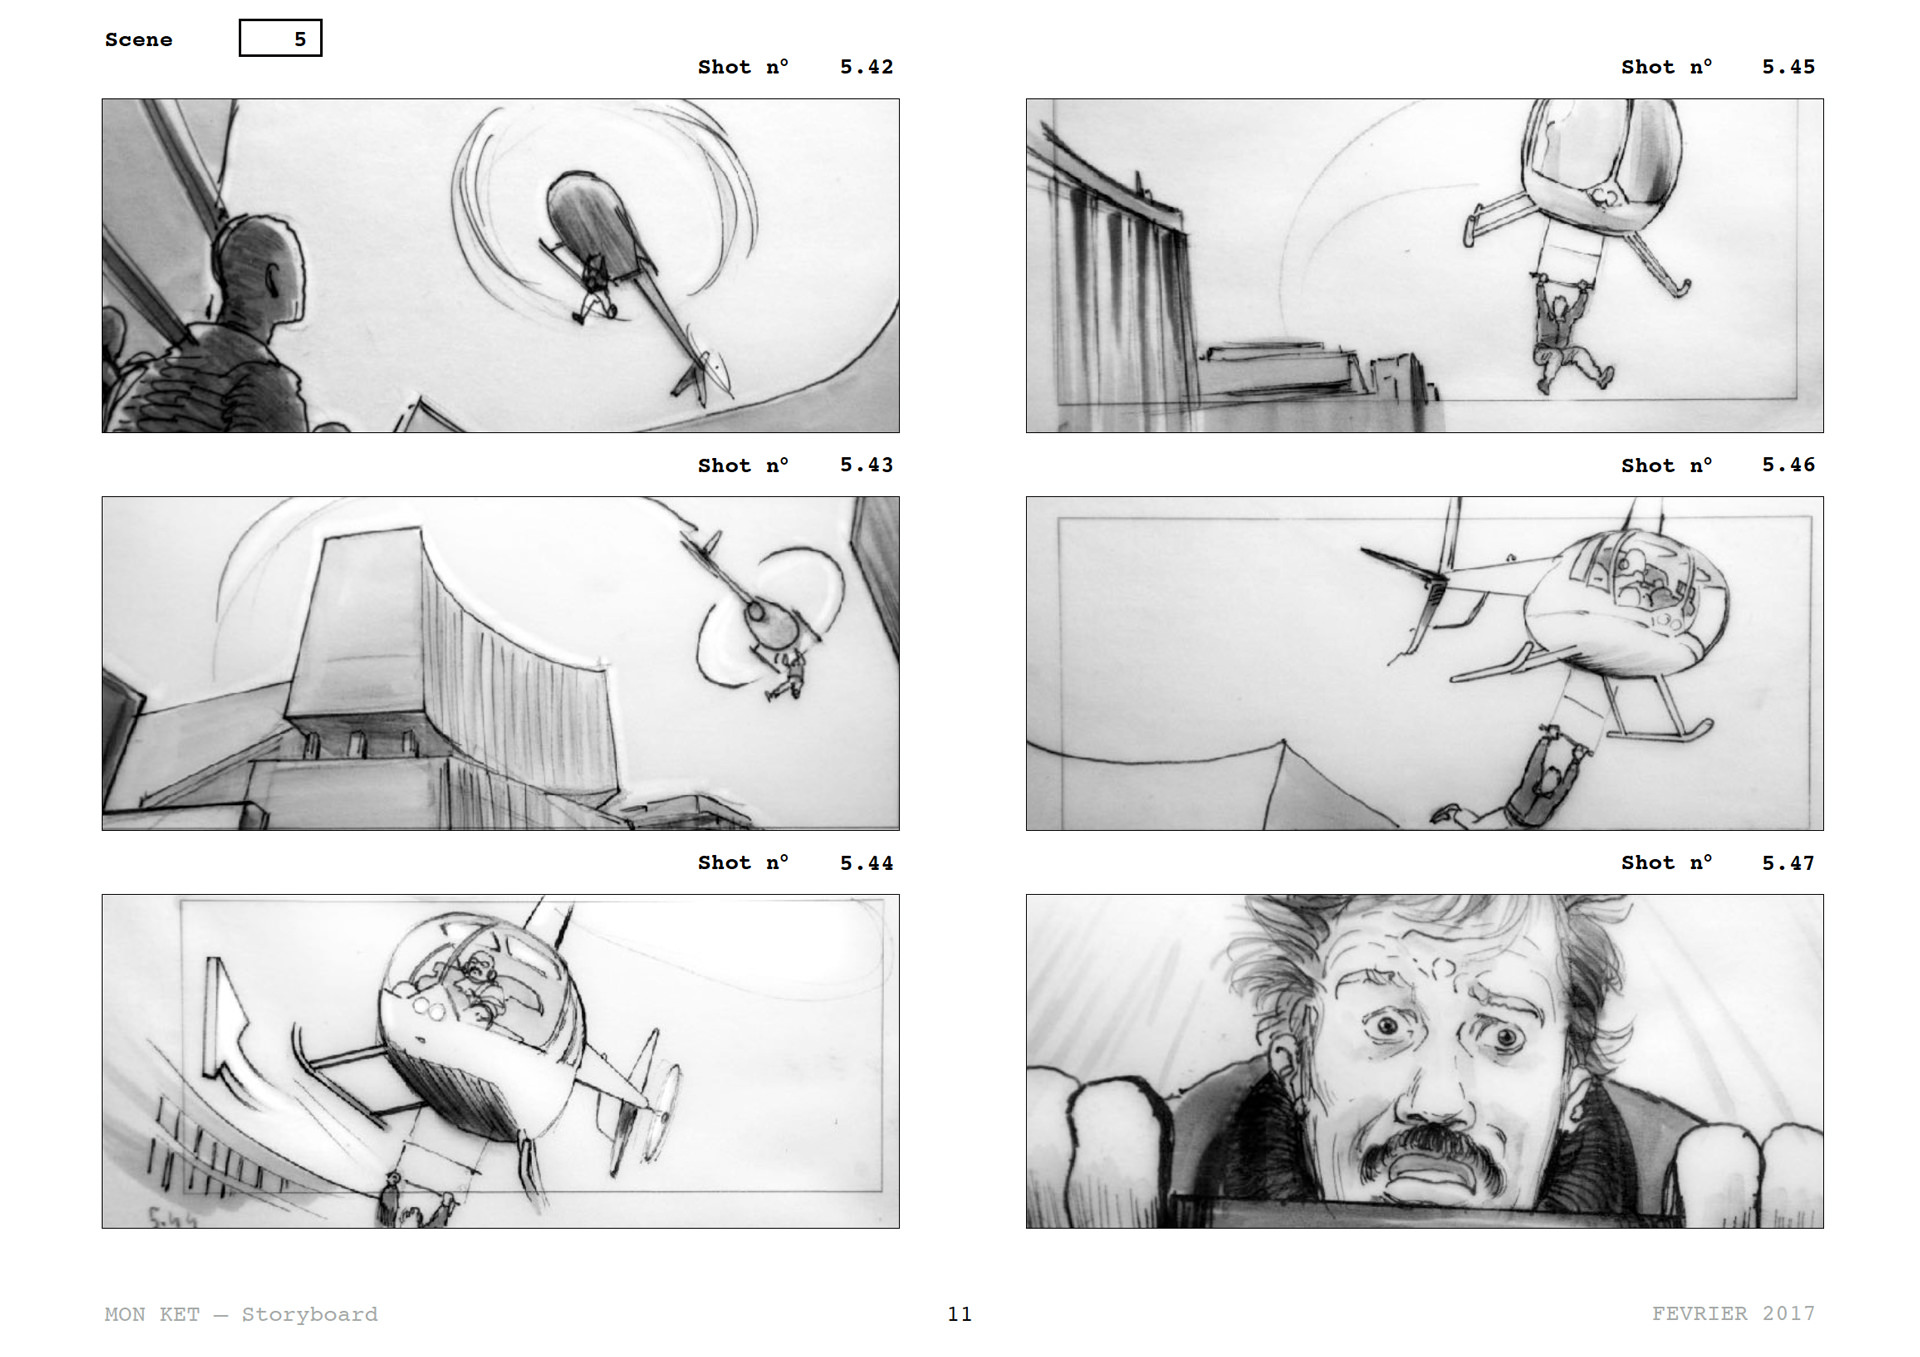 =Mon Ket — Storyboard, scènes d'évasion, page 10